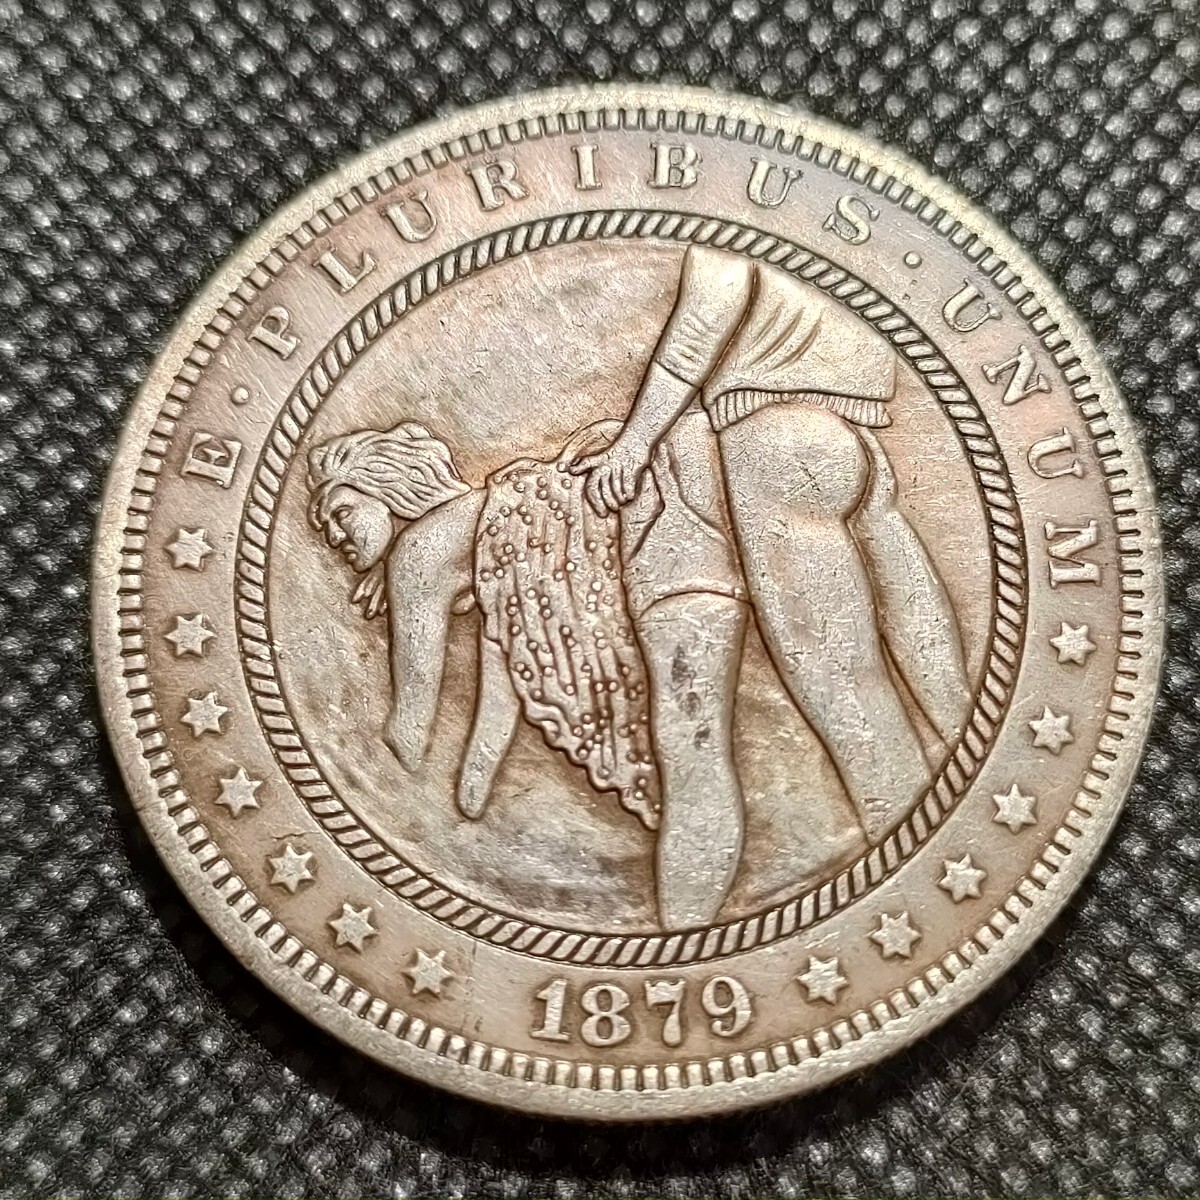 5642 アメリカ古銭 ルンペン 約38mm イーグル チャレンジコイン ゴルフマーカー コイン アンティーク ホーボーの画像1